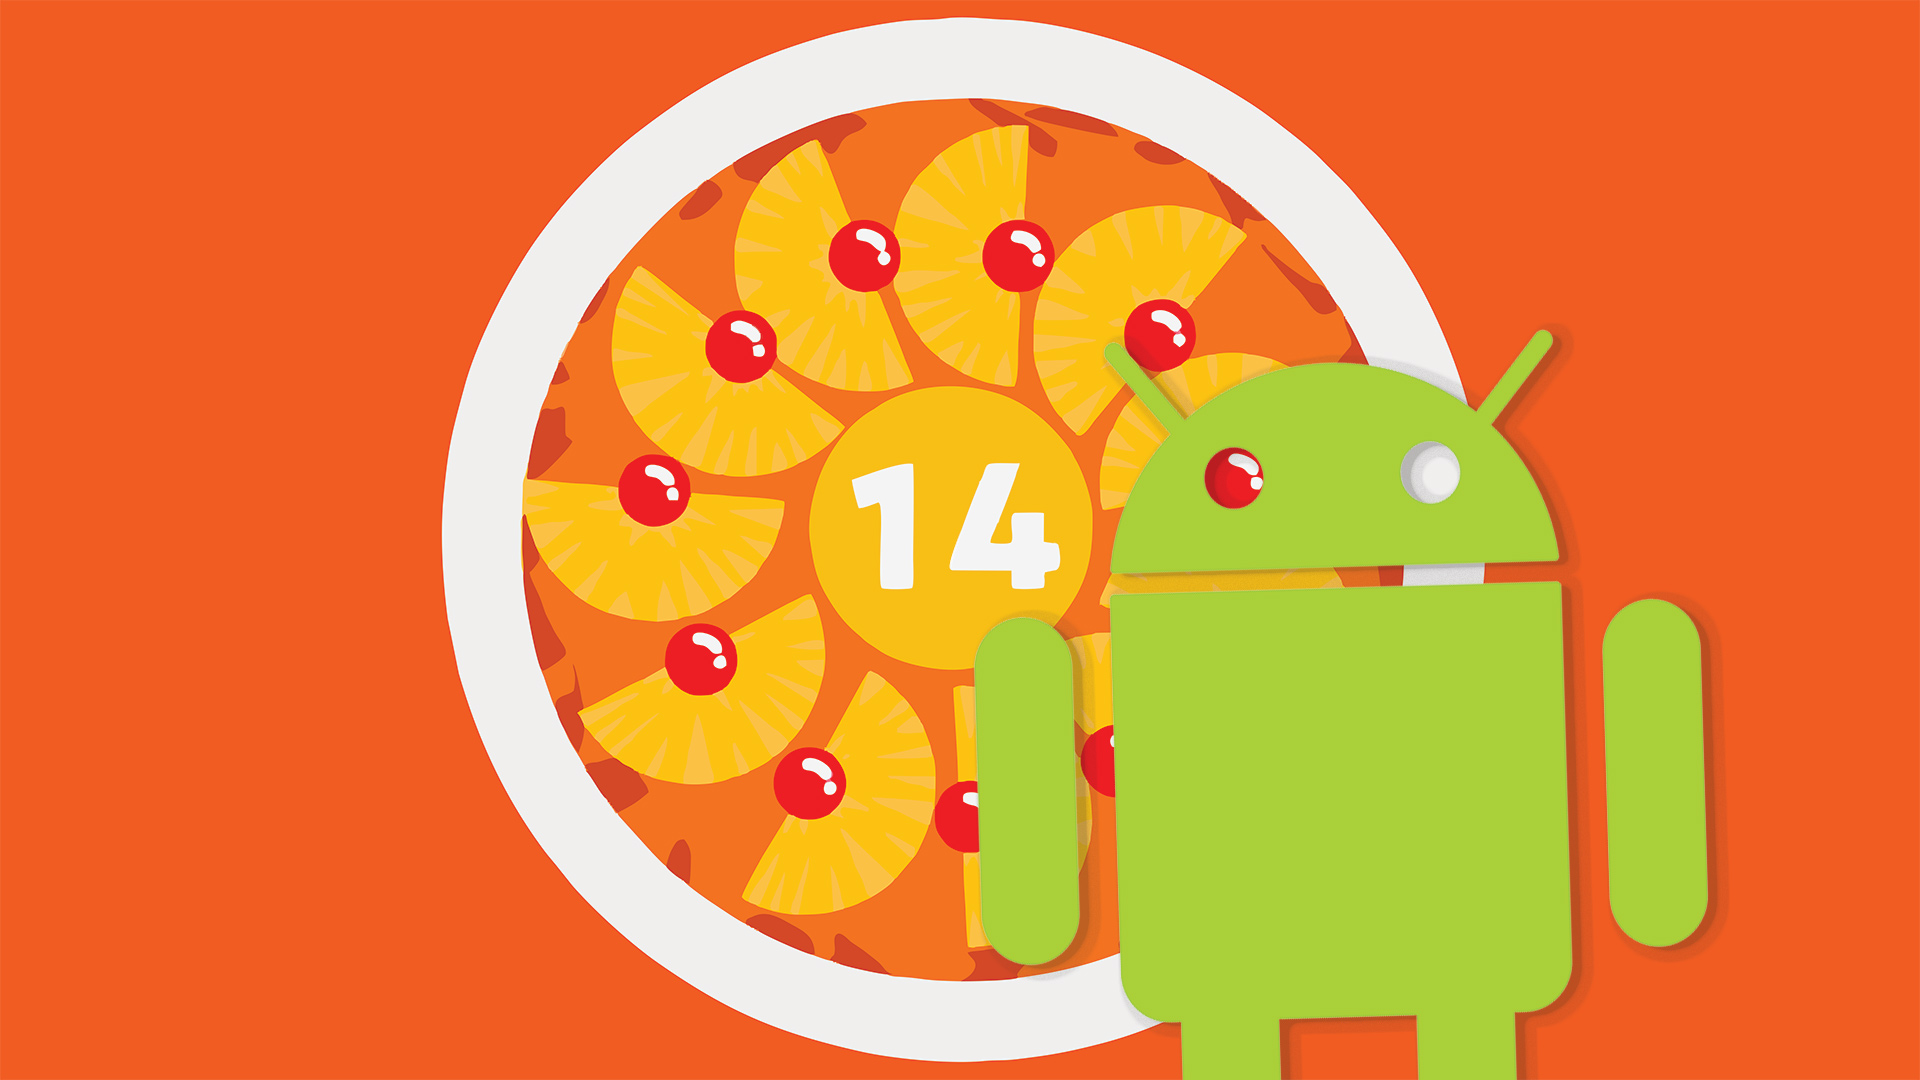 Android-14-u-cake.jpg